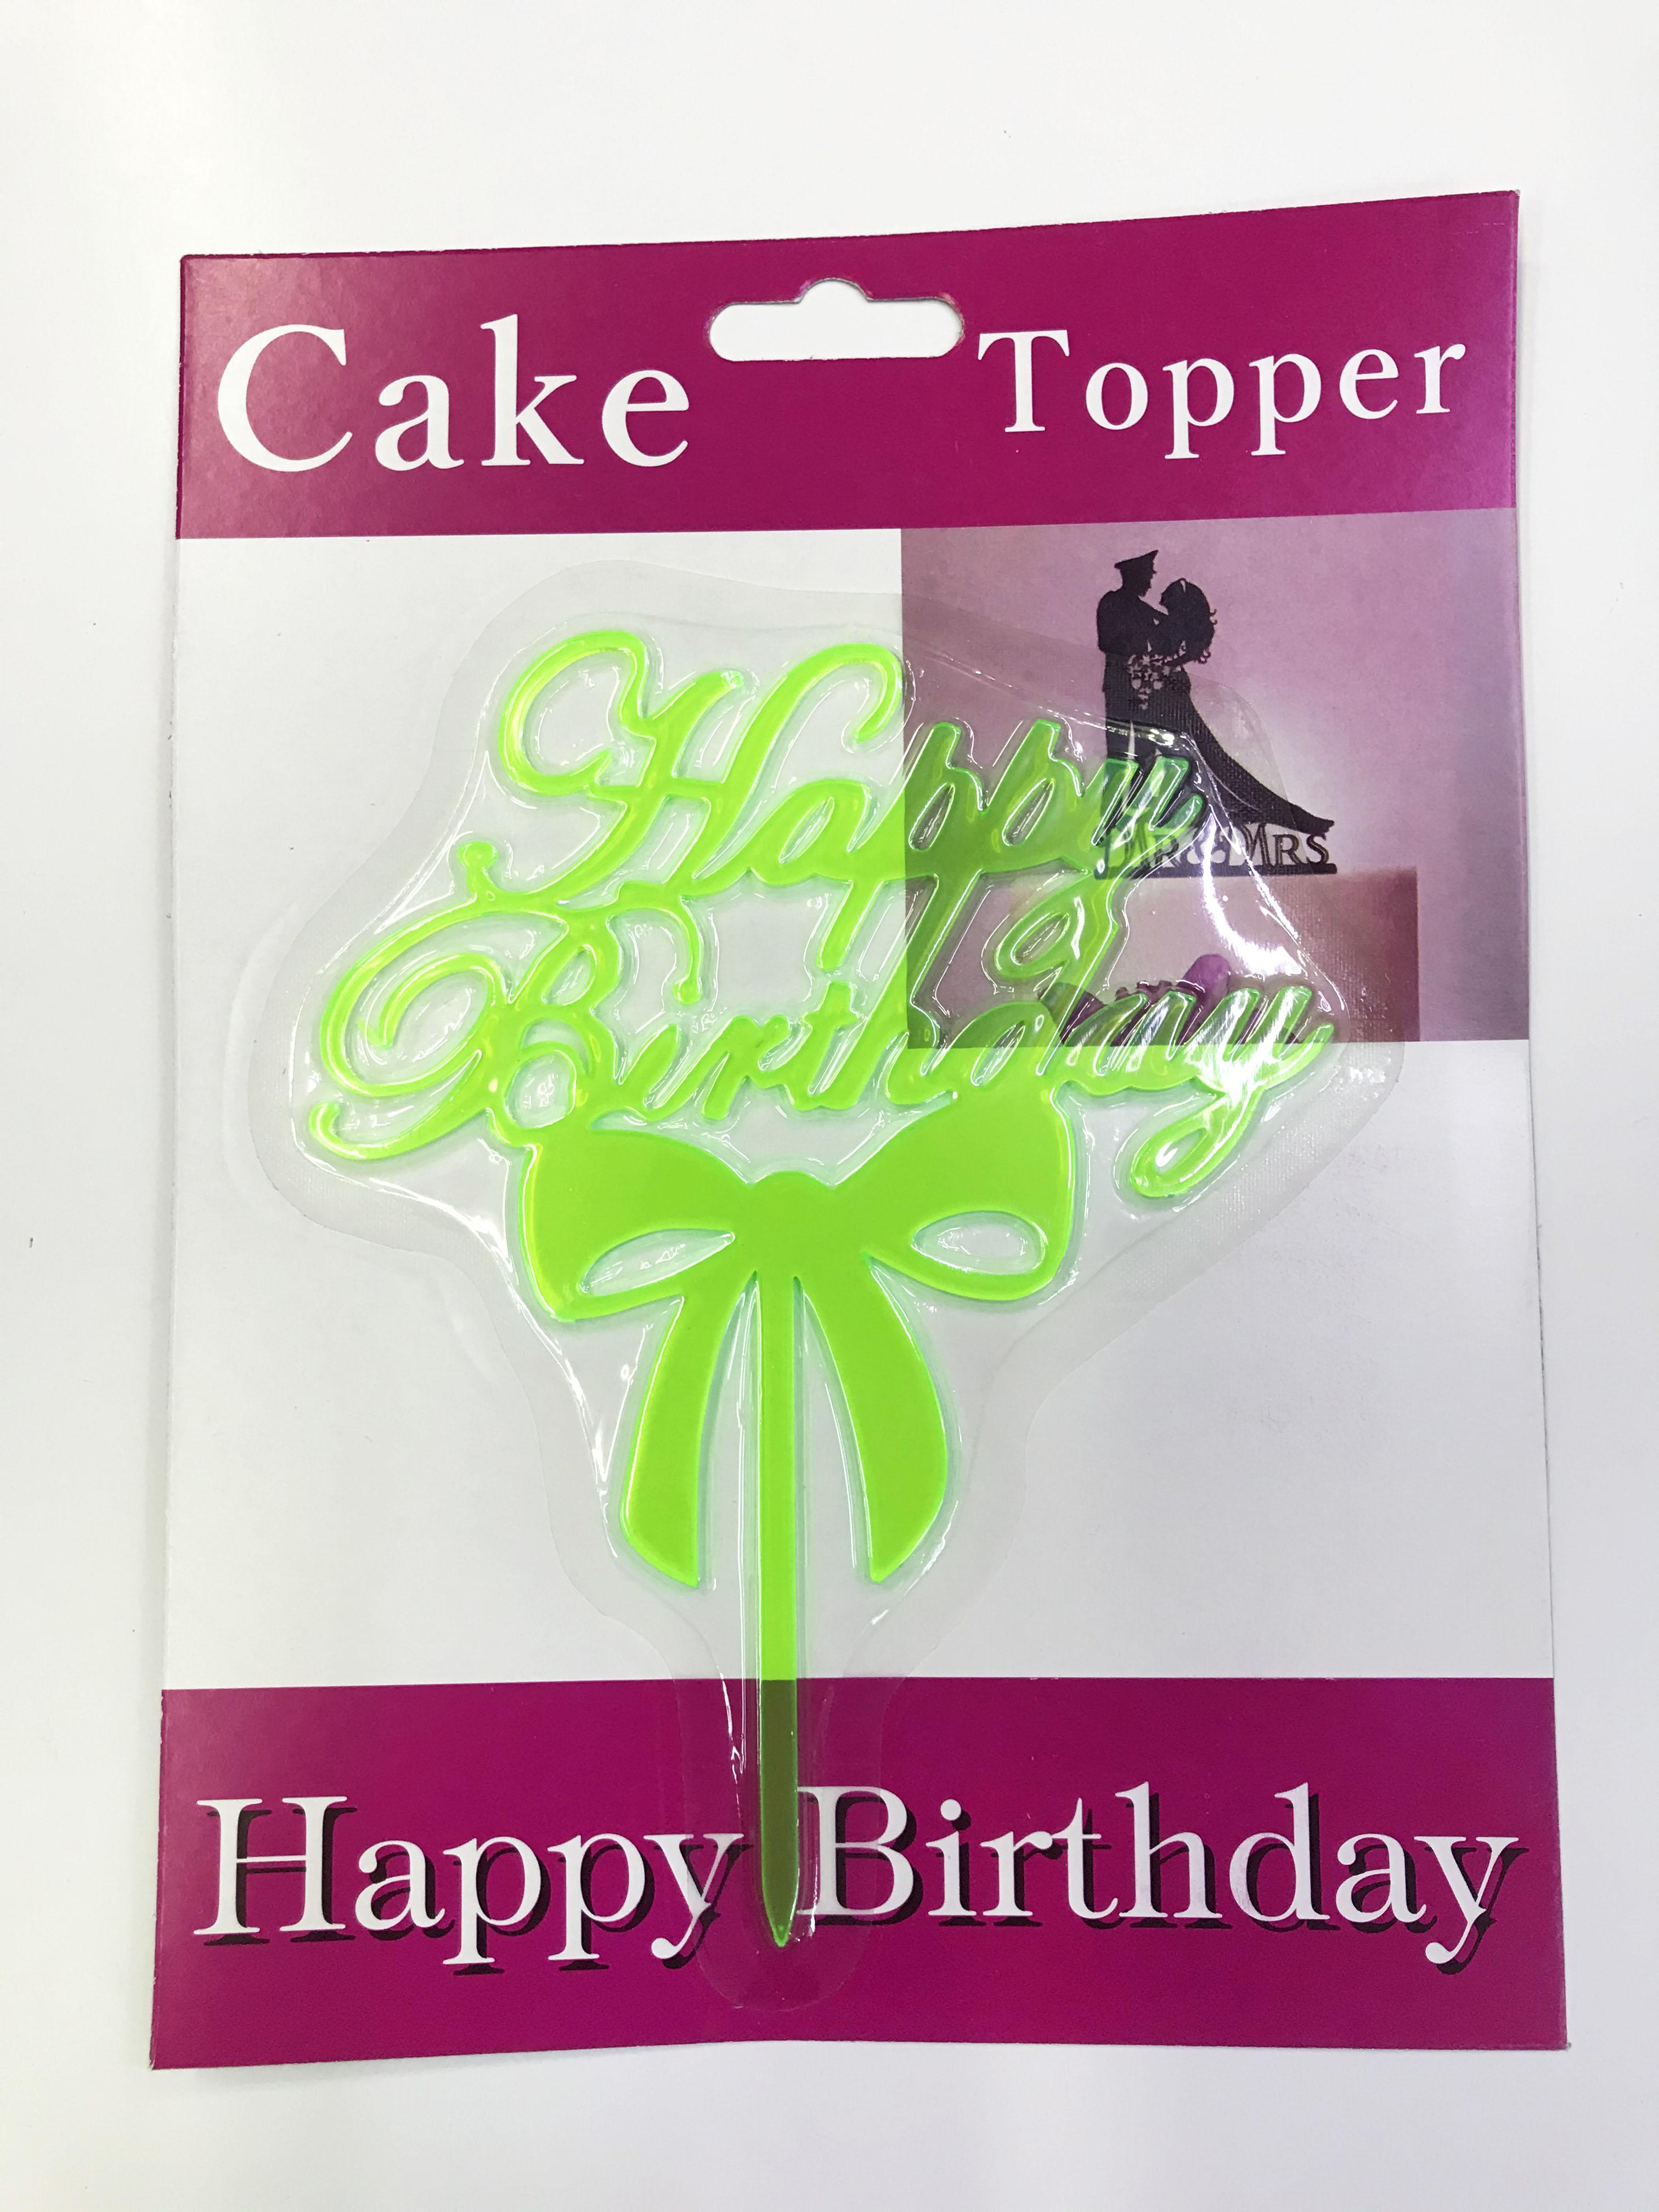 Happy Birthday Yazılı Fiyonklu Pasta Kek Çubuğu Yeşil Renk (Lisinya)